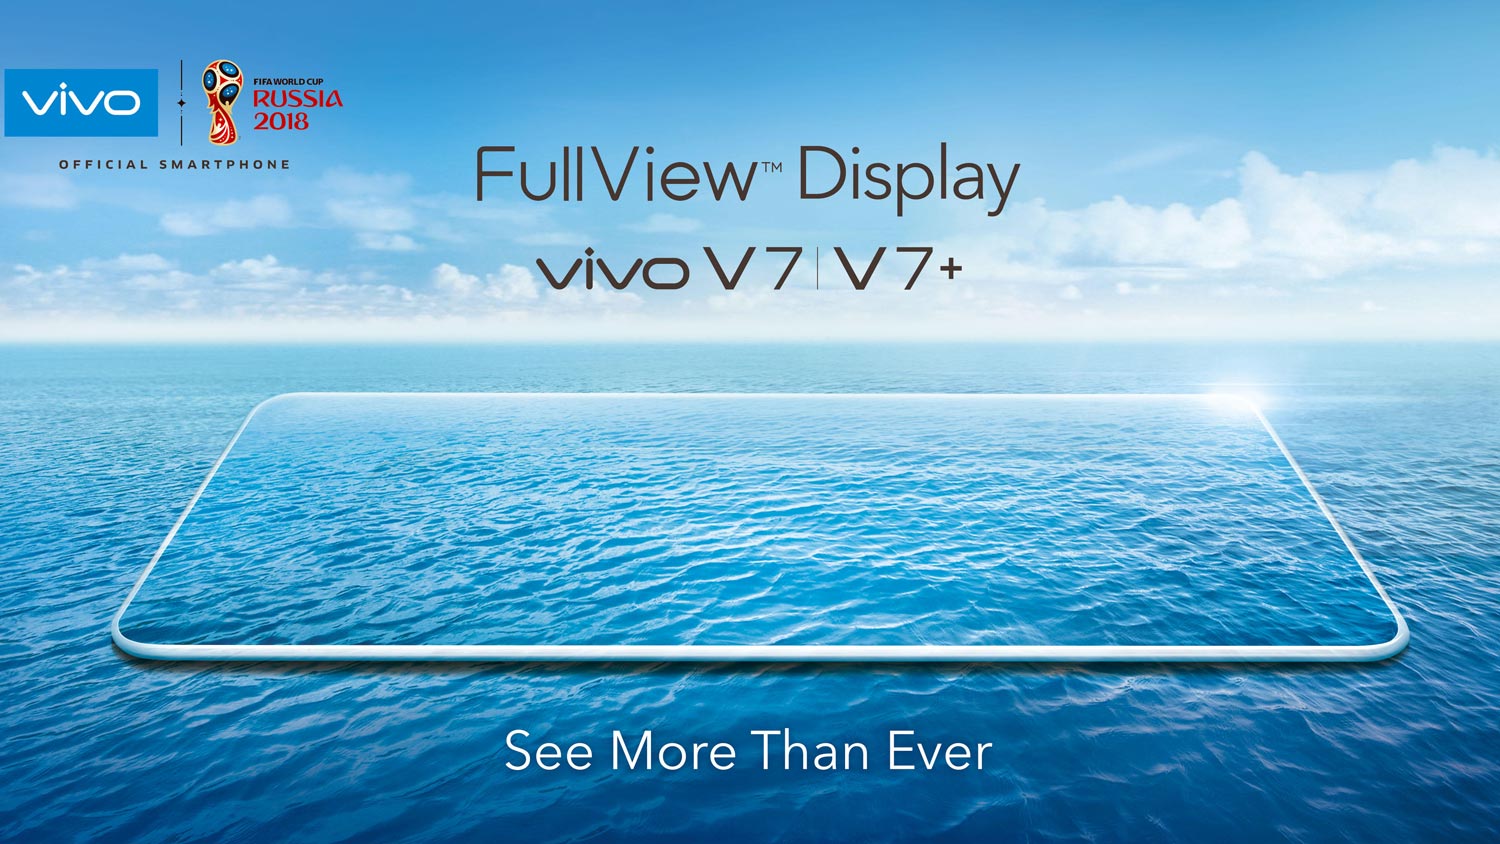 Vivo Hadir Dengan Video Acah Untuk Vivo V7 Dan V7+ Dengan Rekaan Hampir Semua Skrin